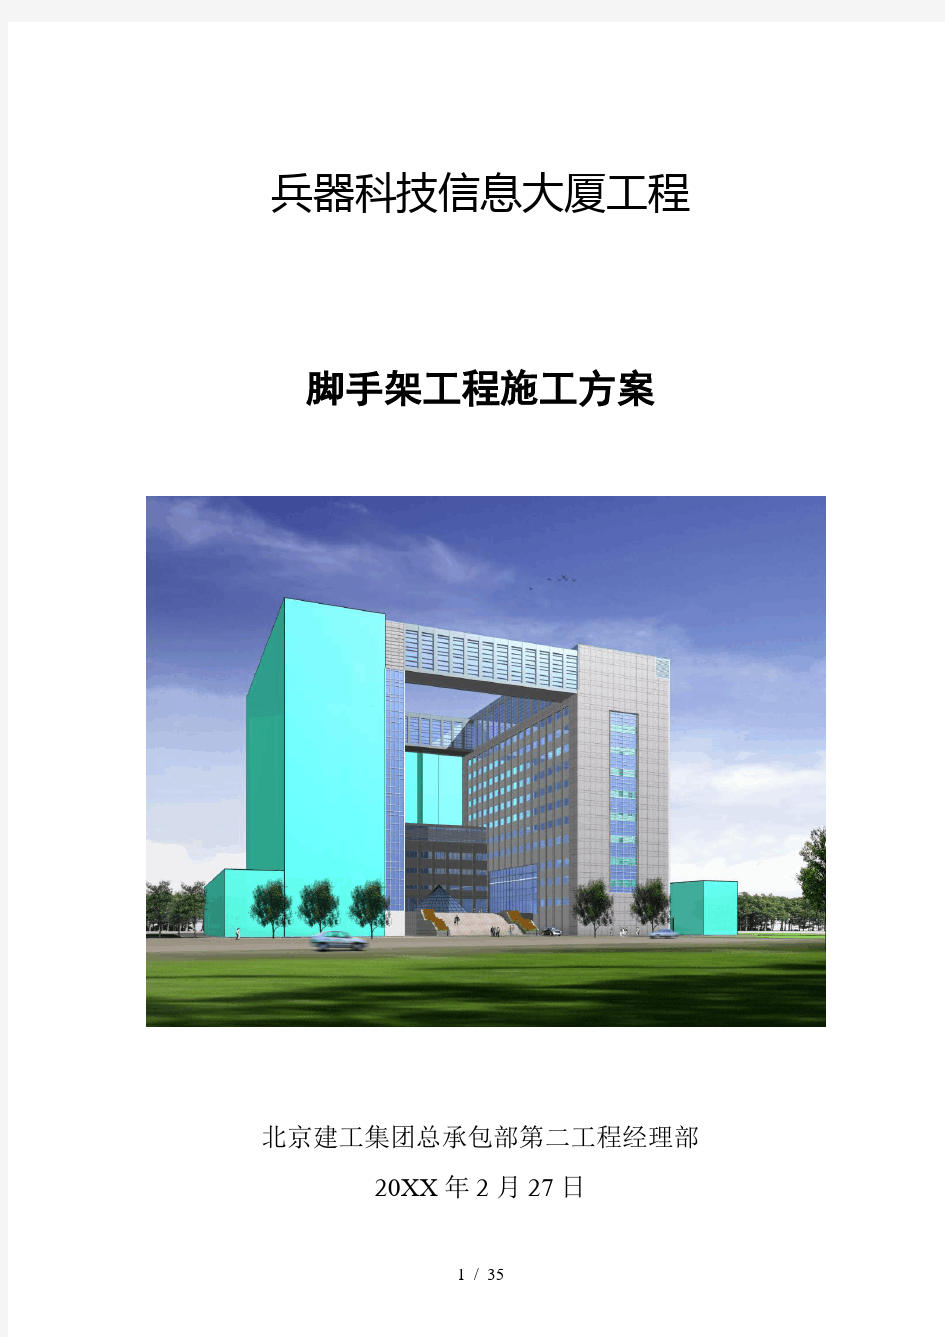 北京建工集团总承包部(第二工程经理部)